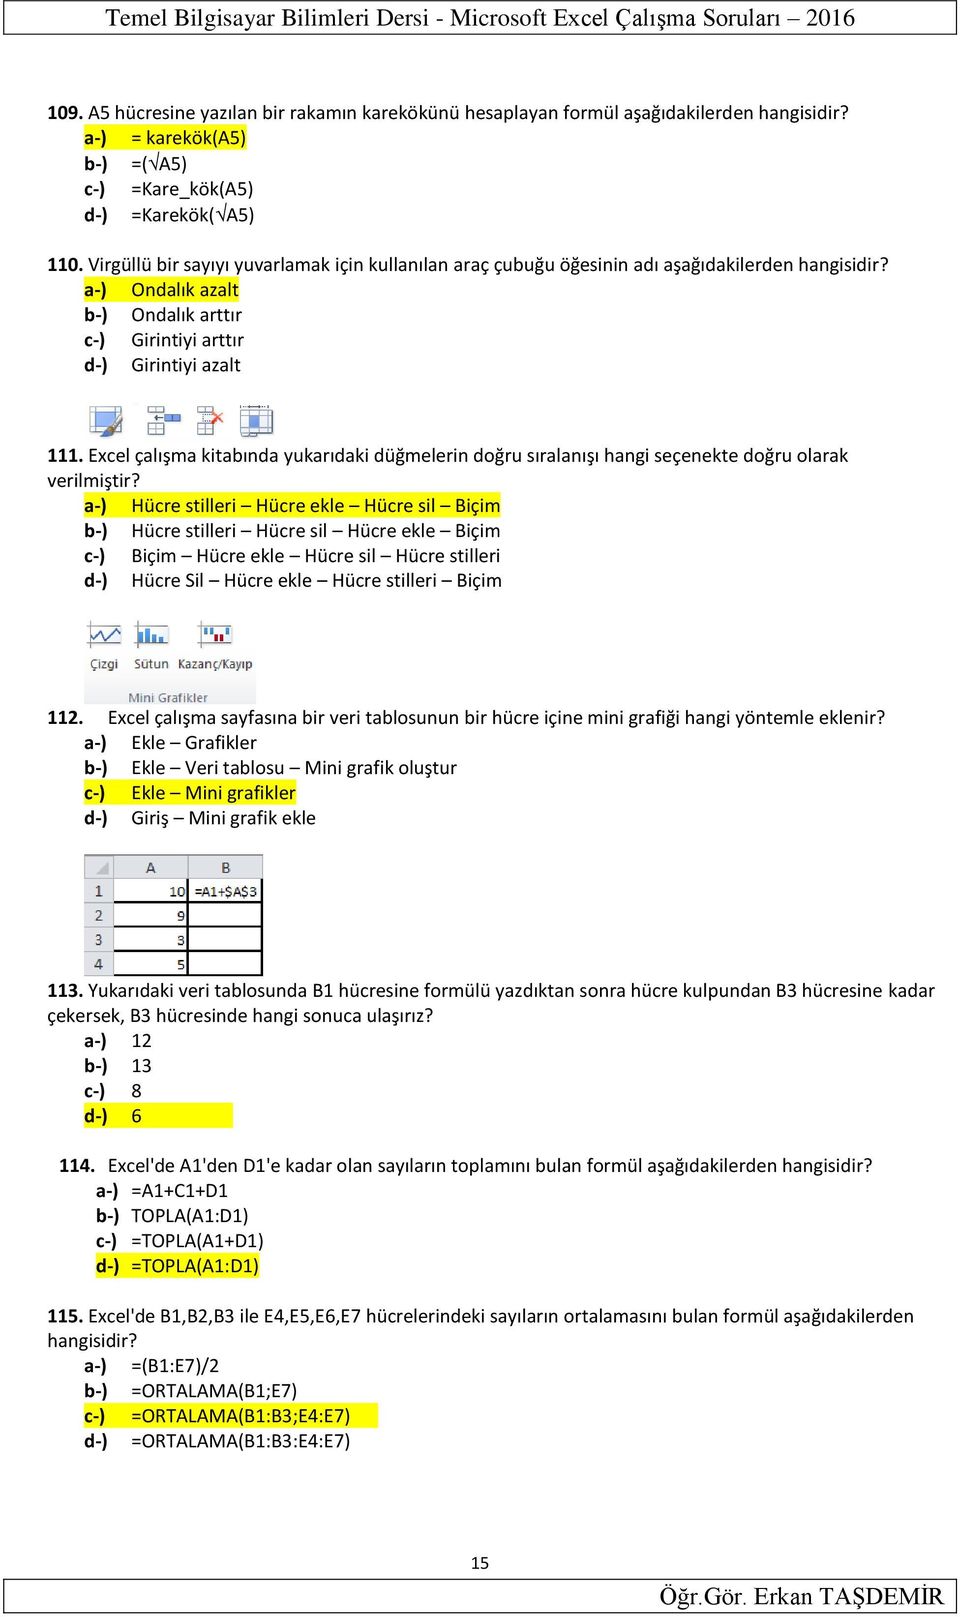 a-) Ondalık azalt b-) Ondalık arttır c-) Girintiyi arttır d-) Girintiyi azalt 111. Excel çalışma kitabında yukarıdaki düğmelerin doğru sıralanışı hangi seçenekte doğru olarak verilmiştir?